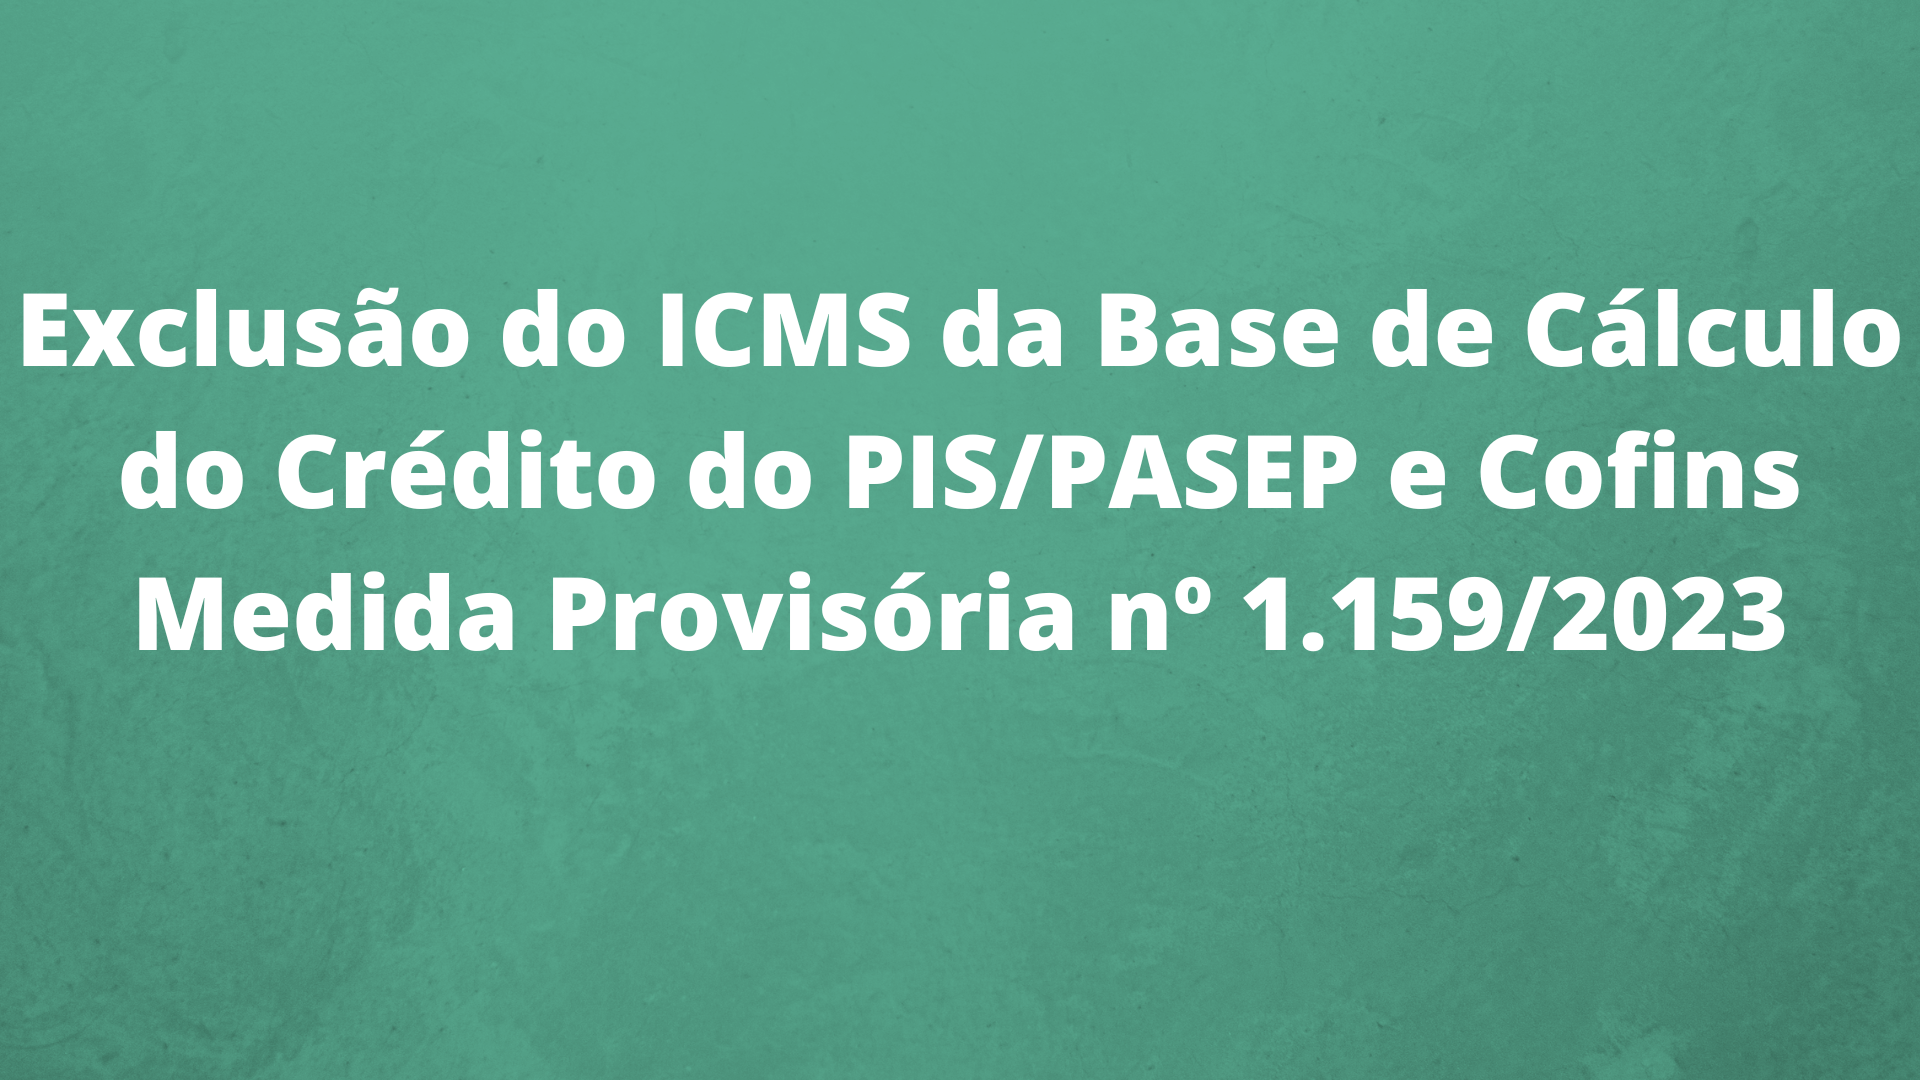 Exclusão do ICMS da Base de Cálculo do Crédito do PIS/PASEP e Cofins